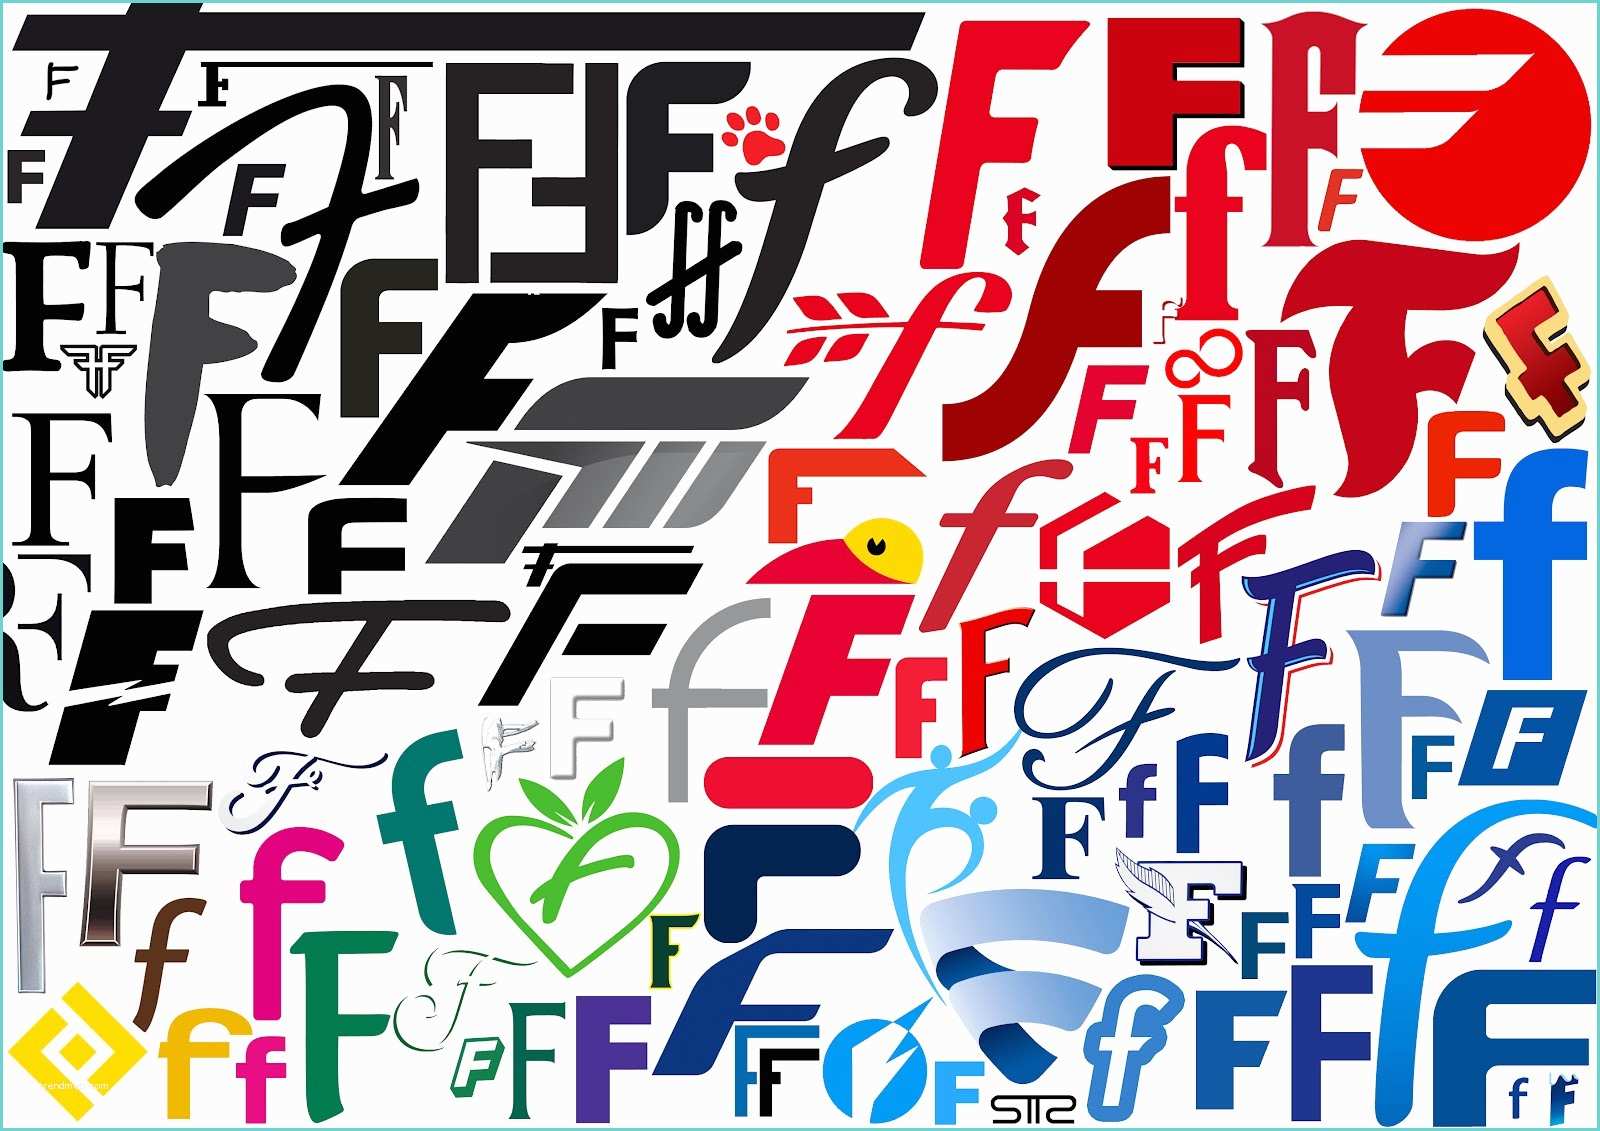 Logo Rouge Avec Un B Et Une Couronne Santtchez Alphabet Logo Typographie Lettre "f" bysttz